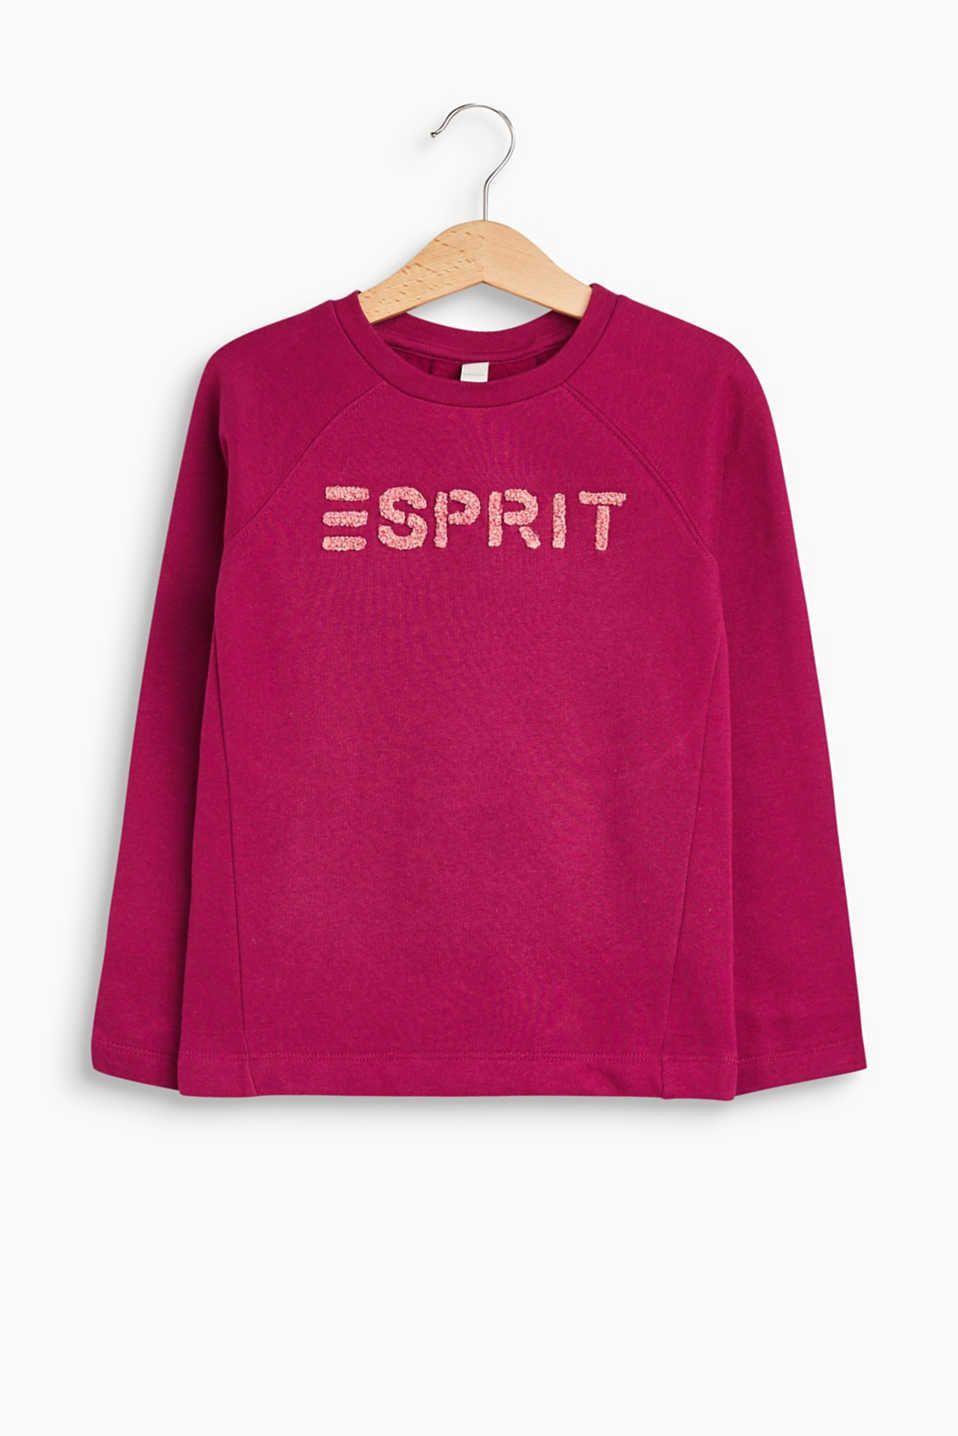 Esprit Logo - Esprit - Logo sweatshirt in 100% cotton at our Online Shop